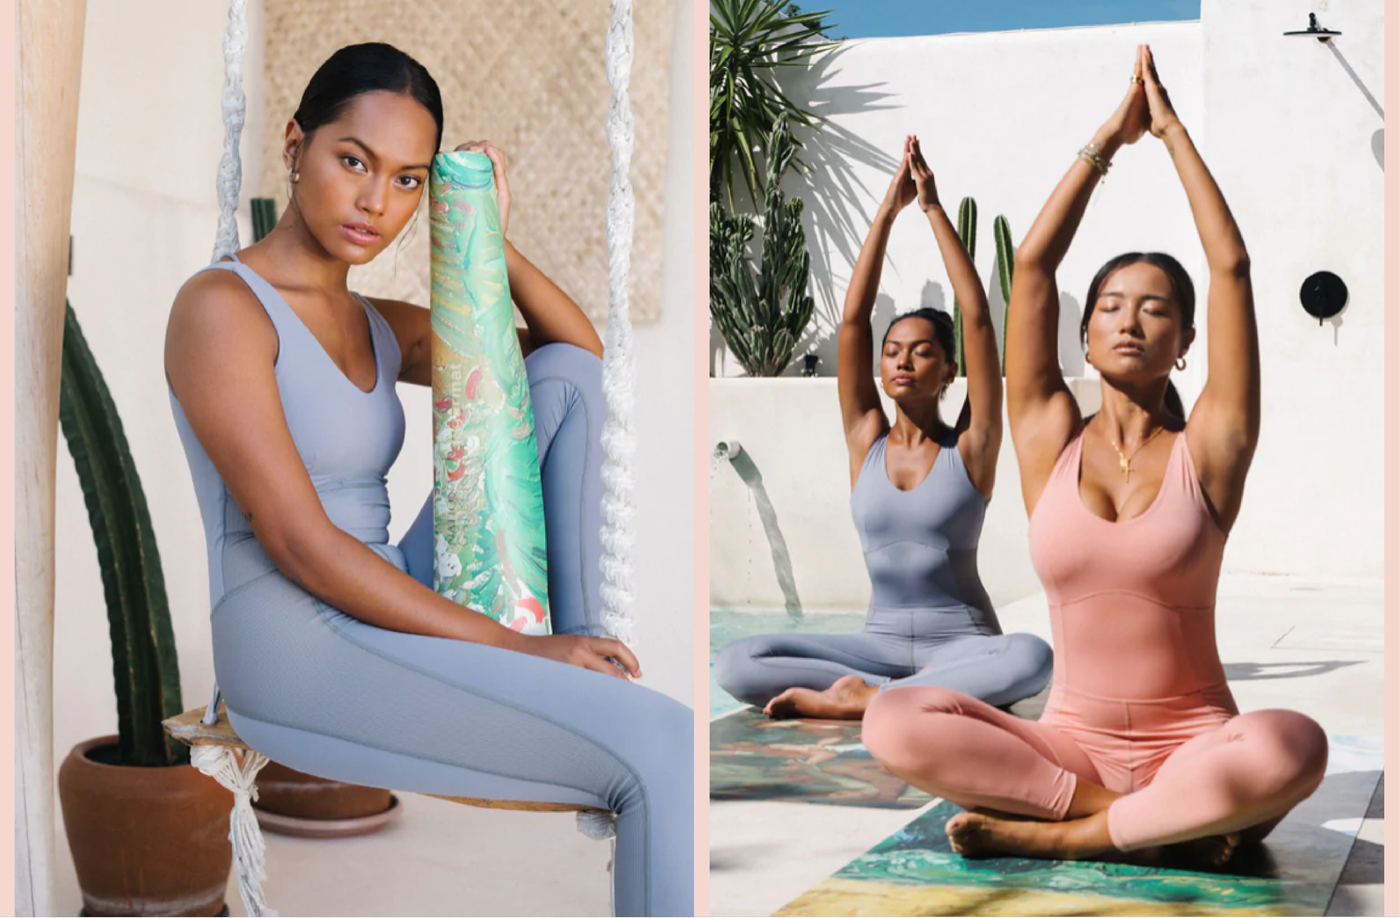 Review: Suga Yoga Mat